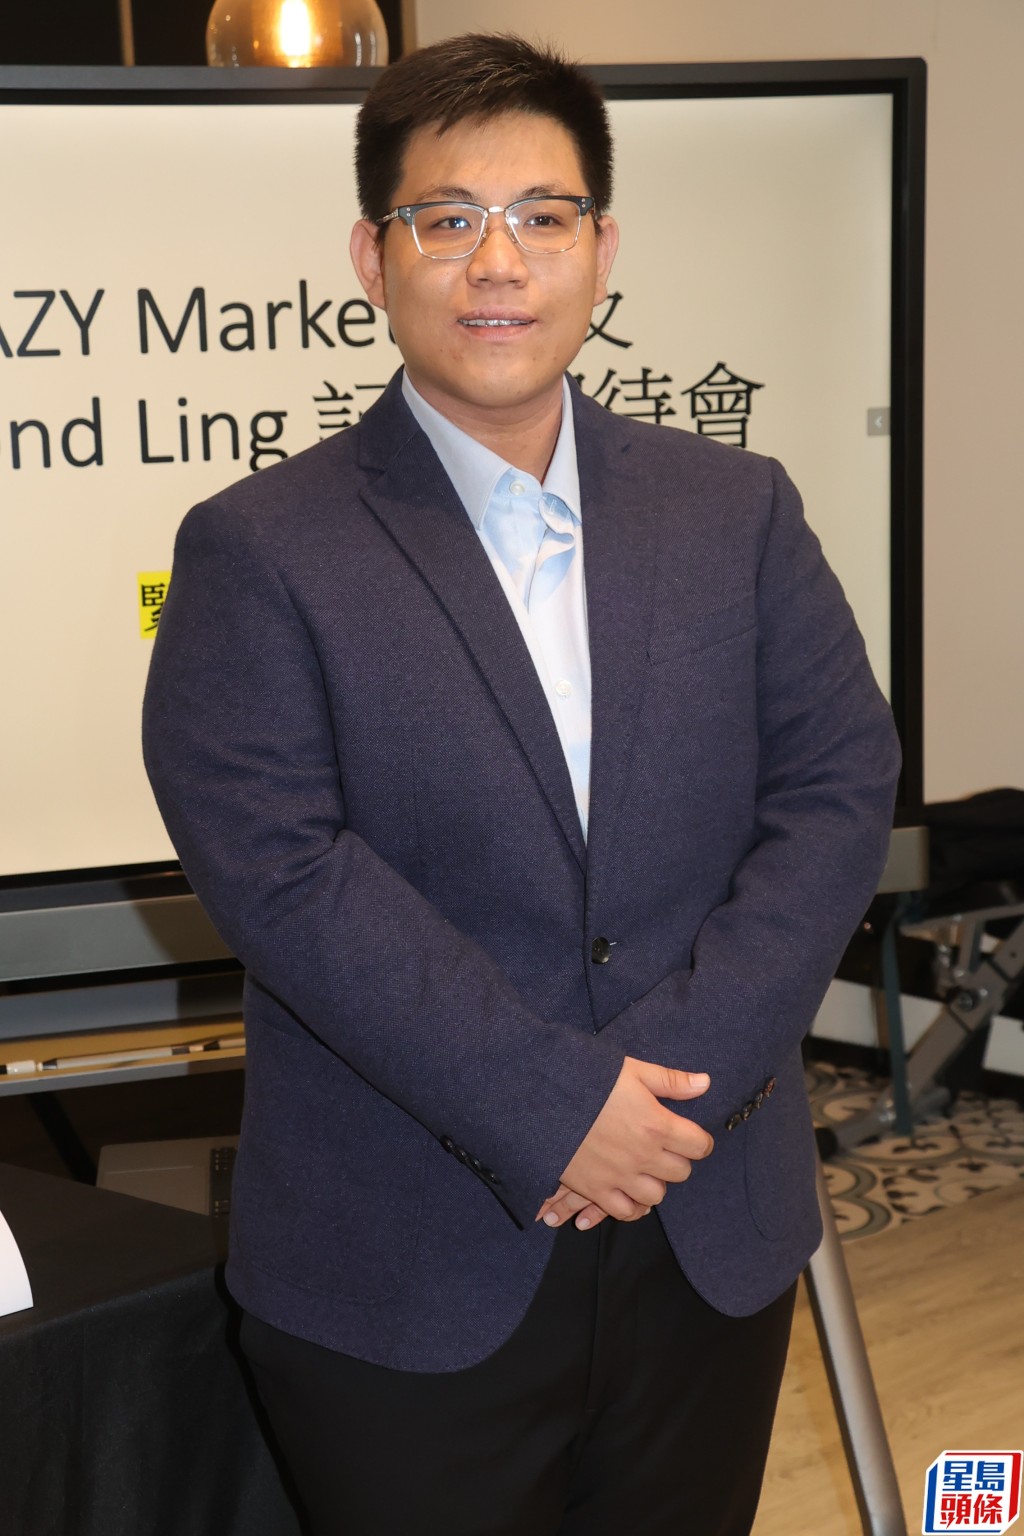 凌志灝有份的市場推廣公司Lazy Marketing，近日被指挪用另一間廣告主理的MIRROR拍攝的資生堂廣告作其公司作品。